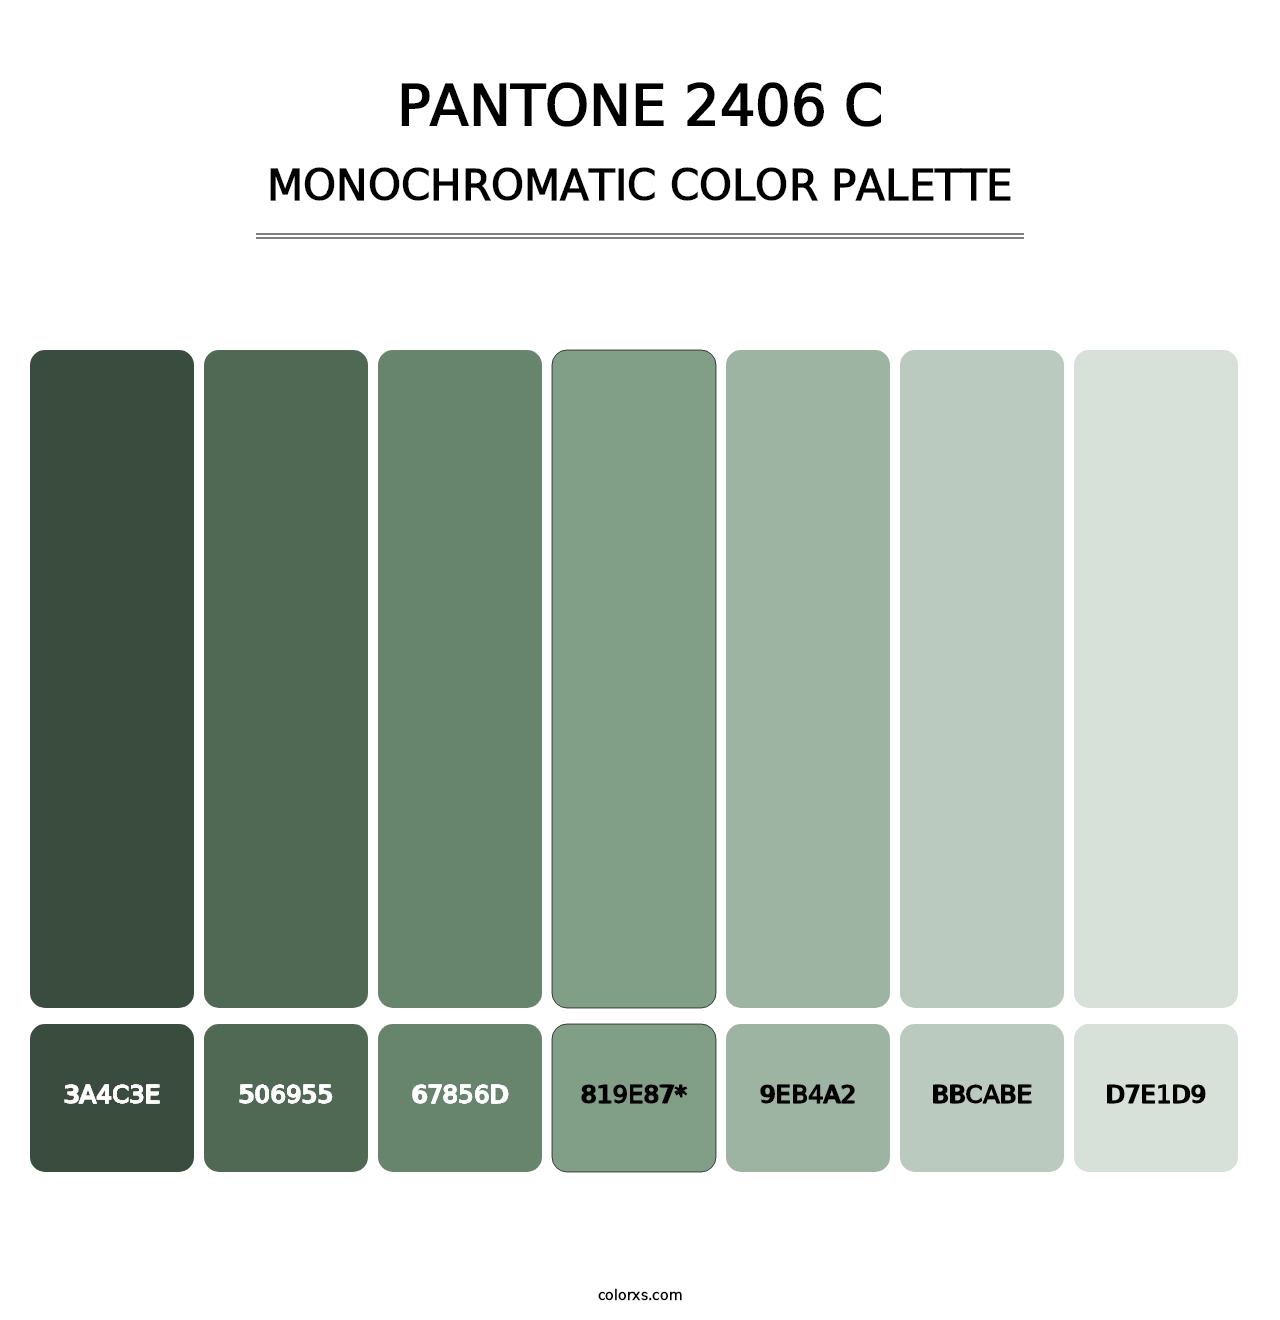 PANTONE 2406 C - Monochromatic Color Palette